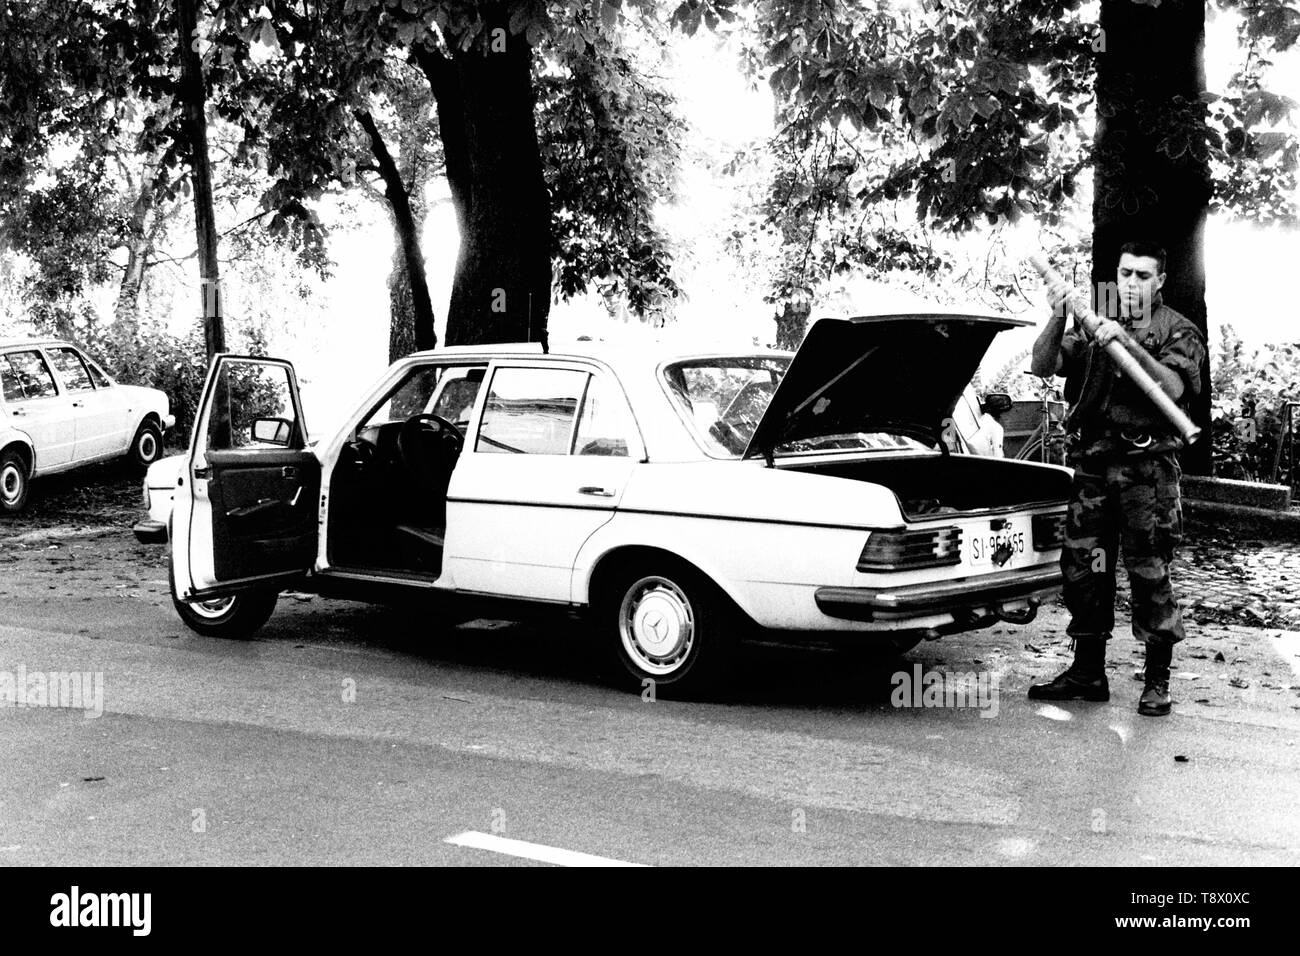 Ein Soldat aus der kroatischen Streitkräfte bereitet eine Trägerrakete von der Rückseite seines Autos, um zu versuchen, und schießen Sie einen Jugoslawischen Bundesarmee Hubschrauber außerhalb der Stadt Sisak während des Krieges dort in 1991. Bild von Adam Alexander Stockfoto